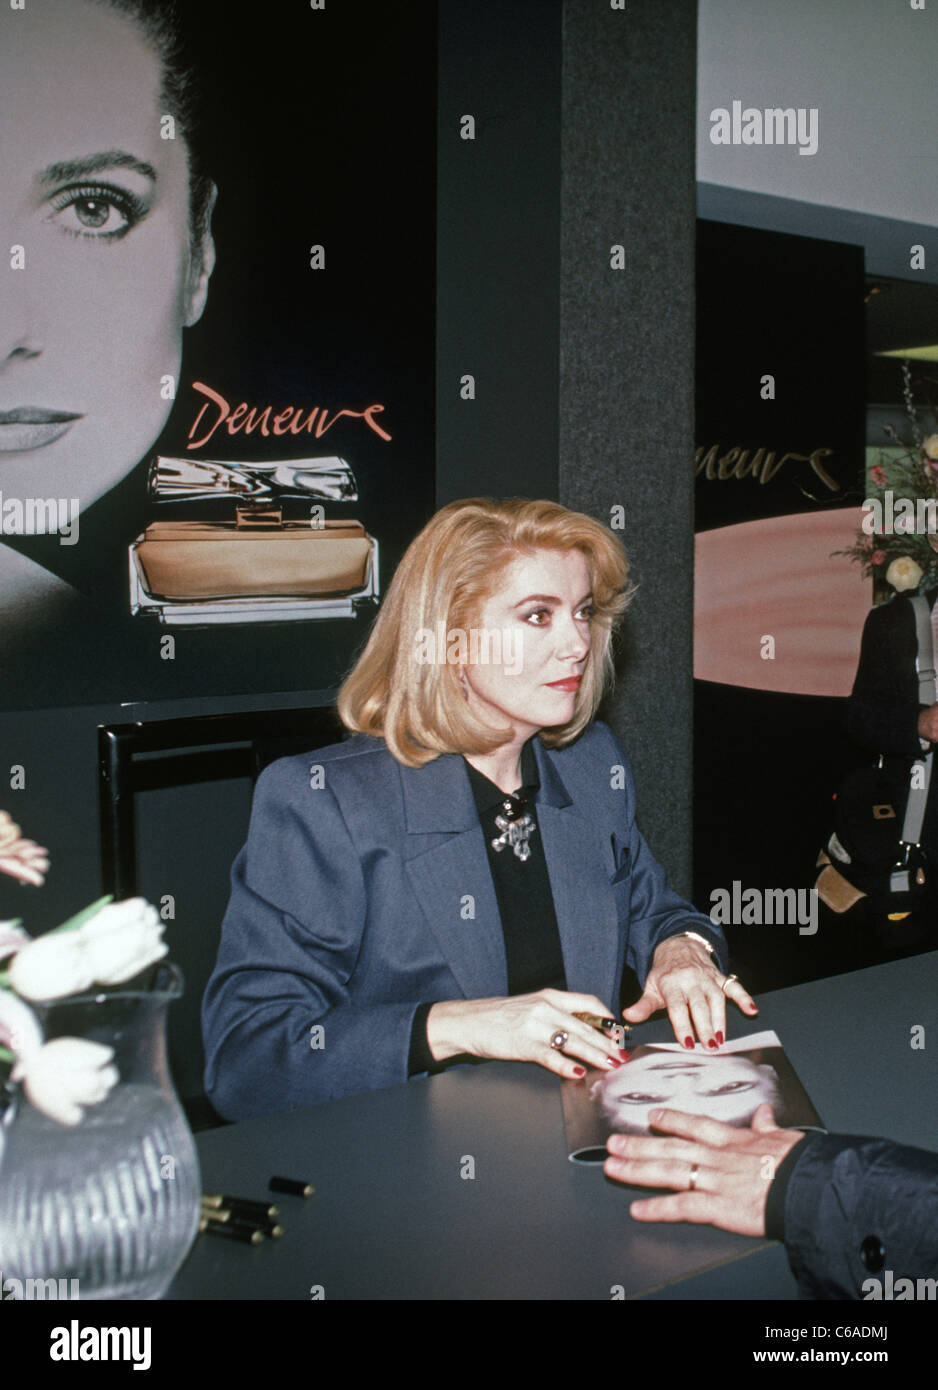 Catherine Deneuve promuove il suo profumo in una San Francisco department store. 1988. In California, Stati Uniti d'America. Foto Stock